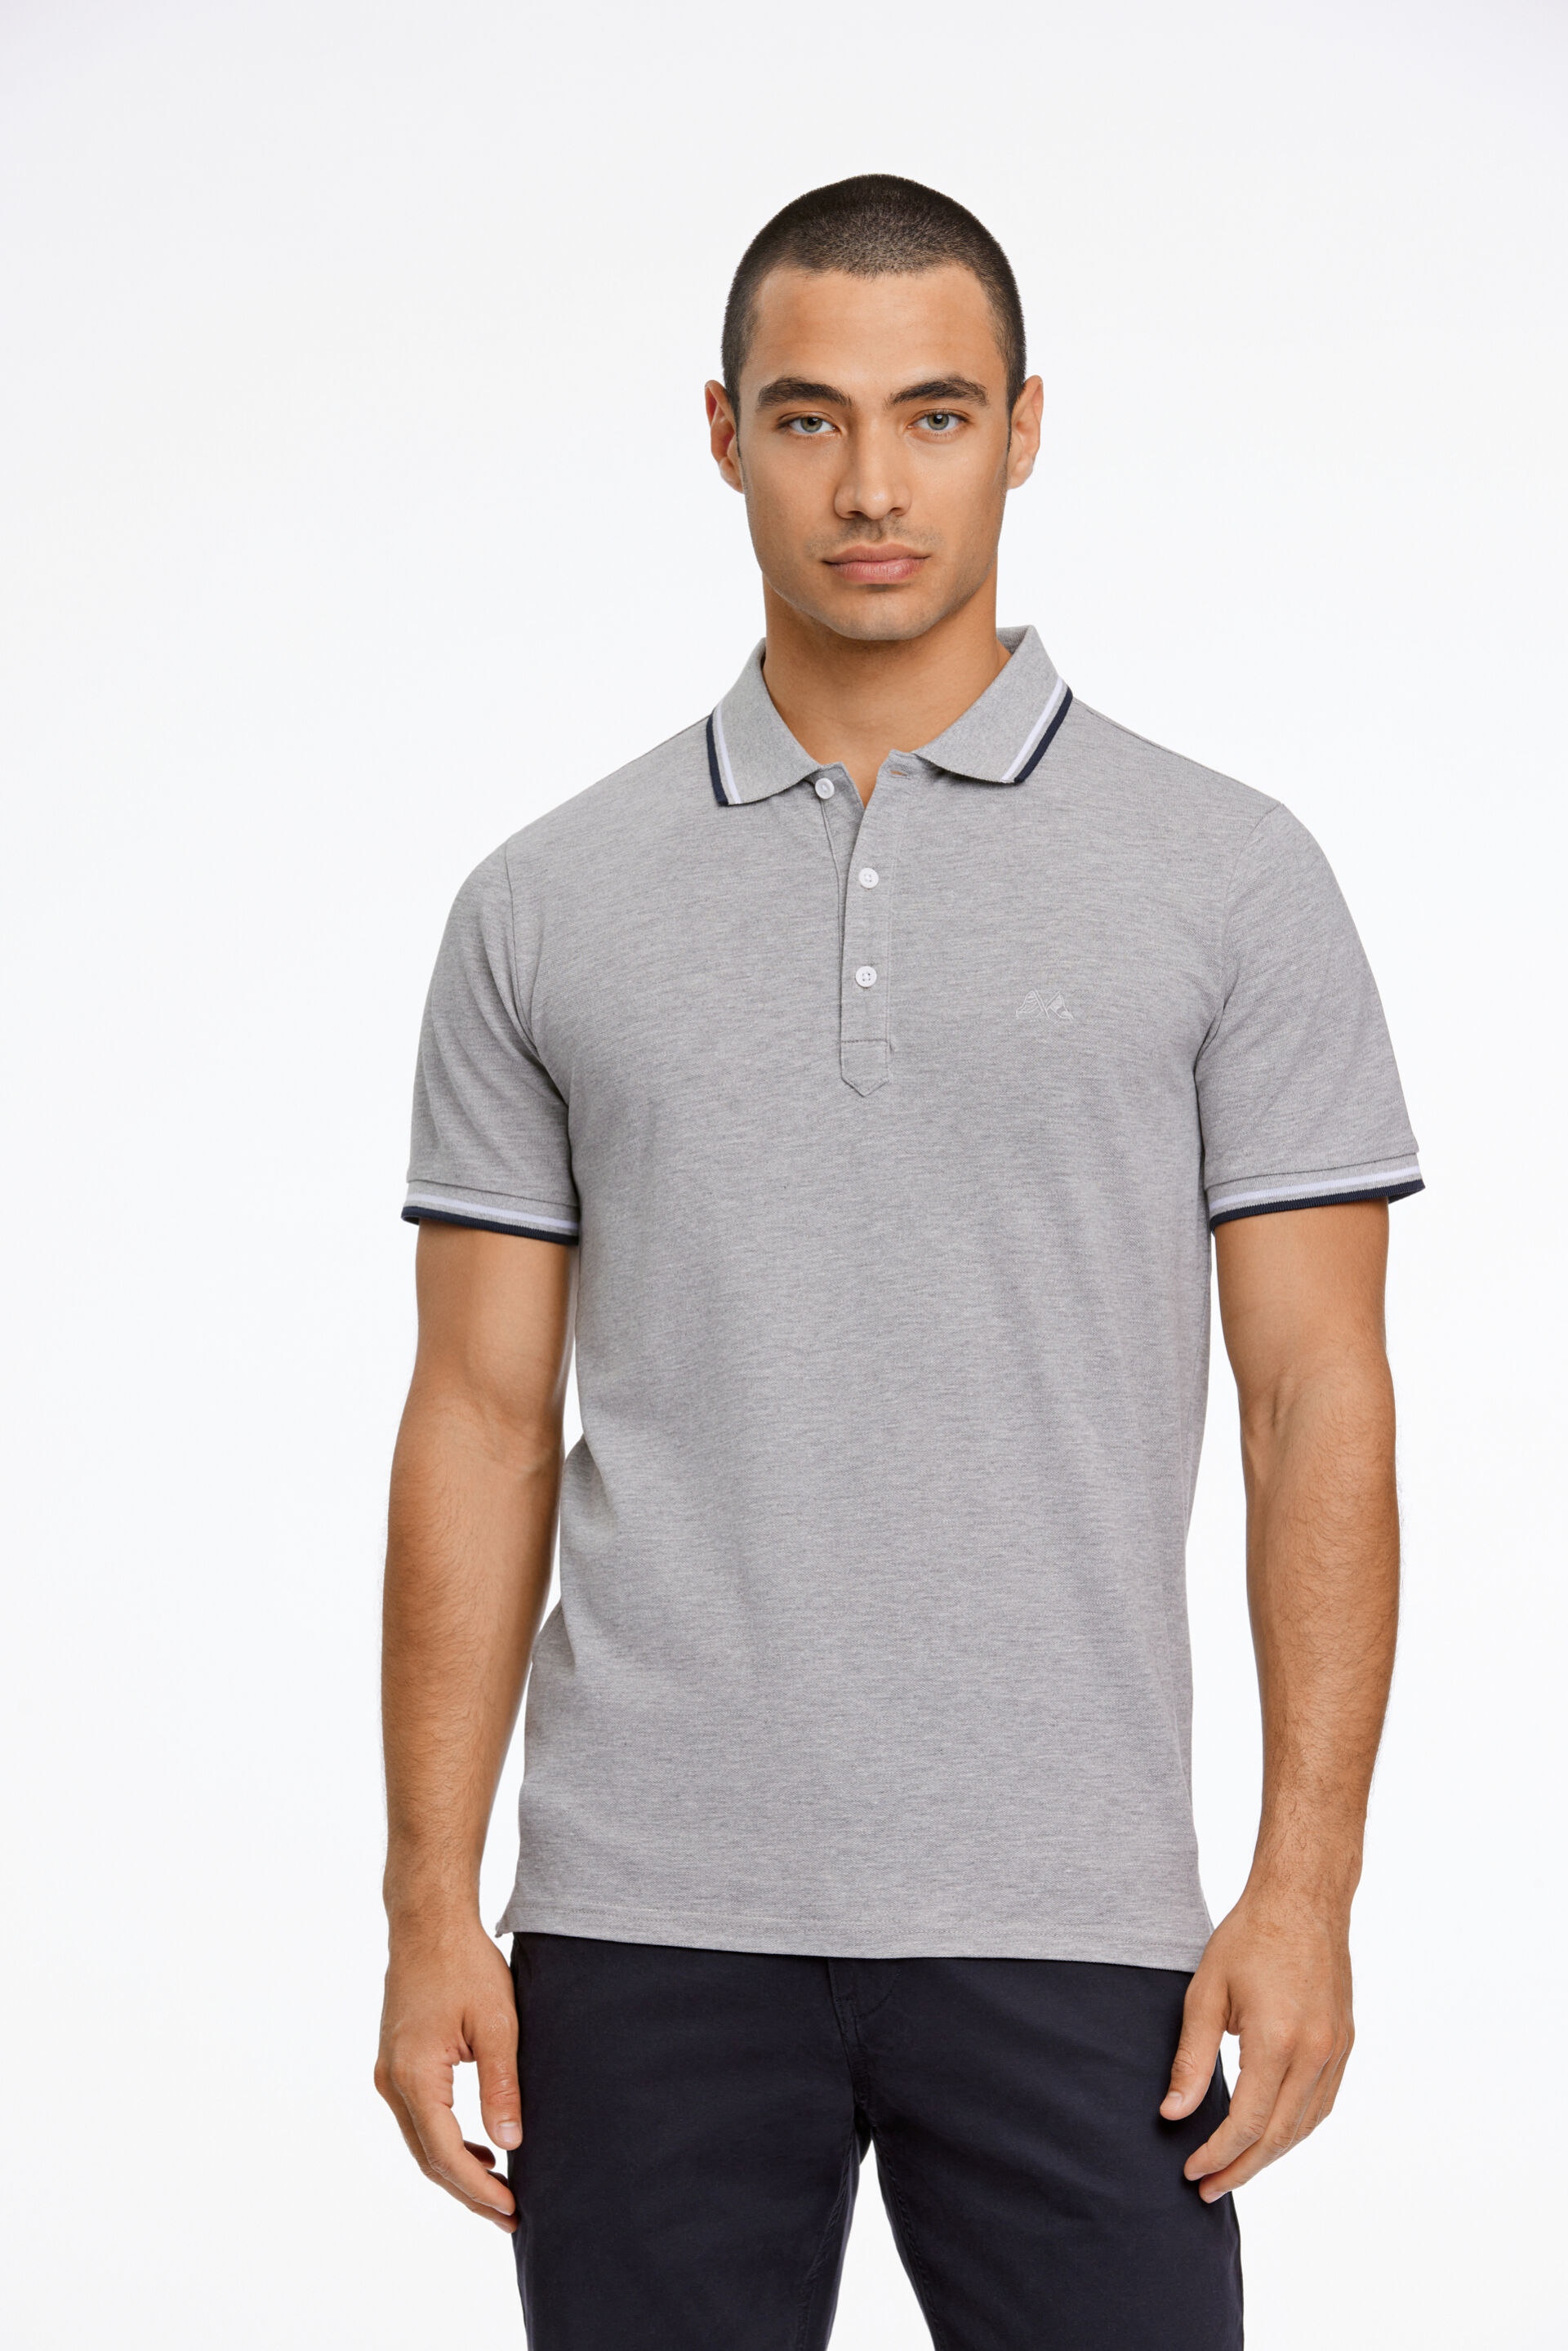 Polo shirt Polo shirt Grey 30-404010